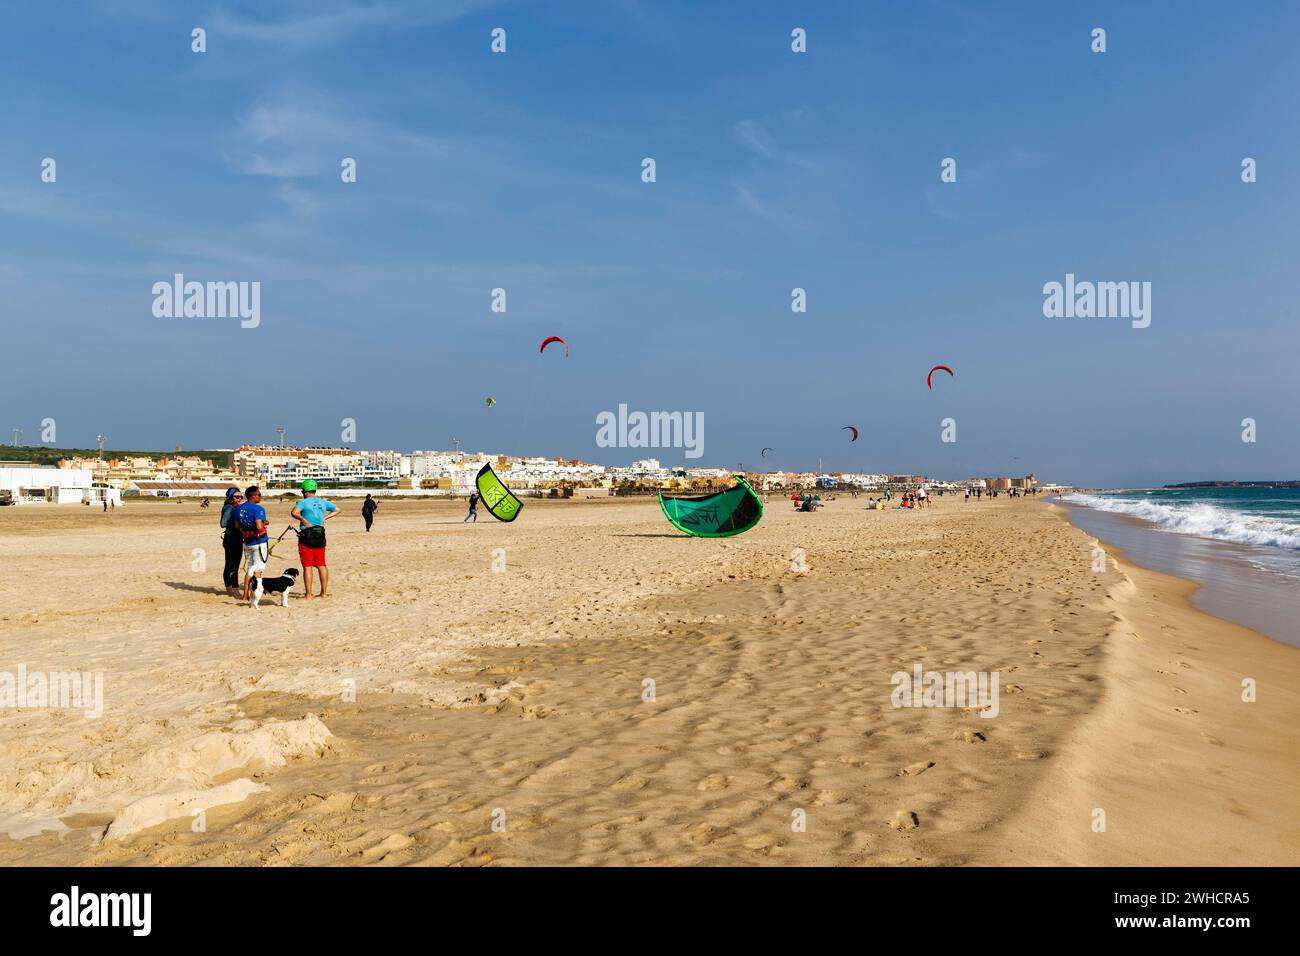 Plage de sable Playa de los lances, kitesurfeurs et marcheurs, Tarifa, détroit de Gibraltar, Costa de la Luz, Andalousie, Espagne Banque D'Images